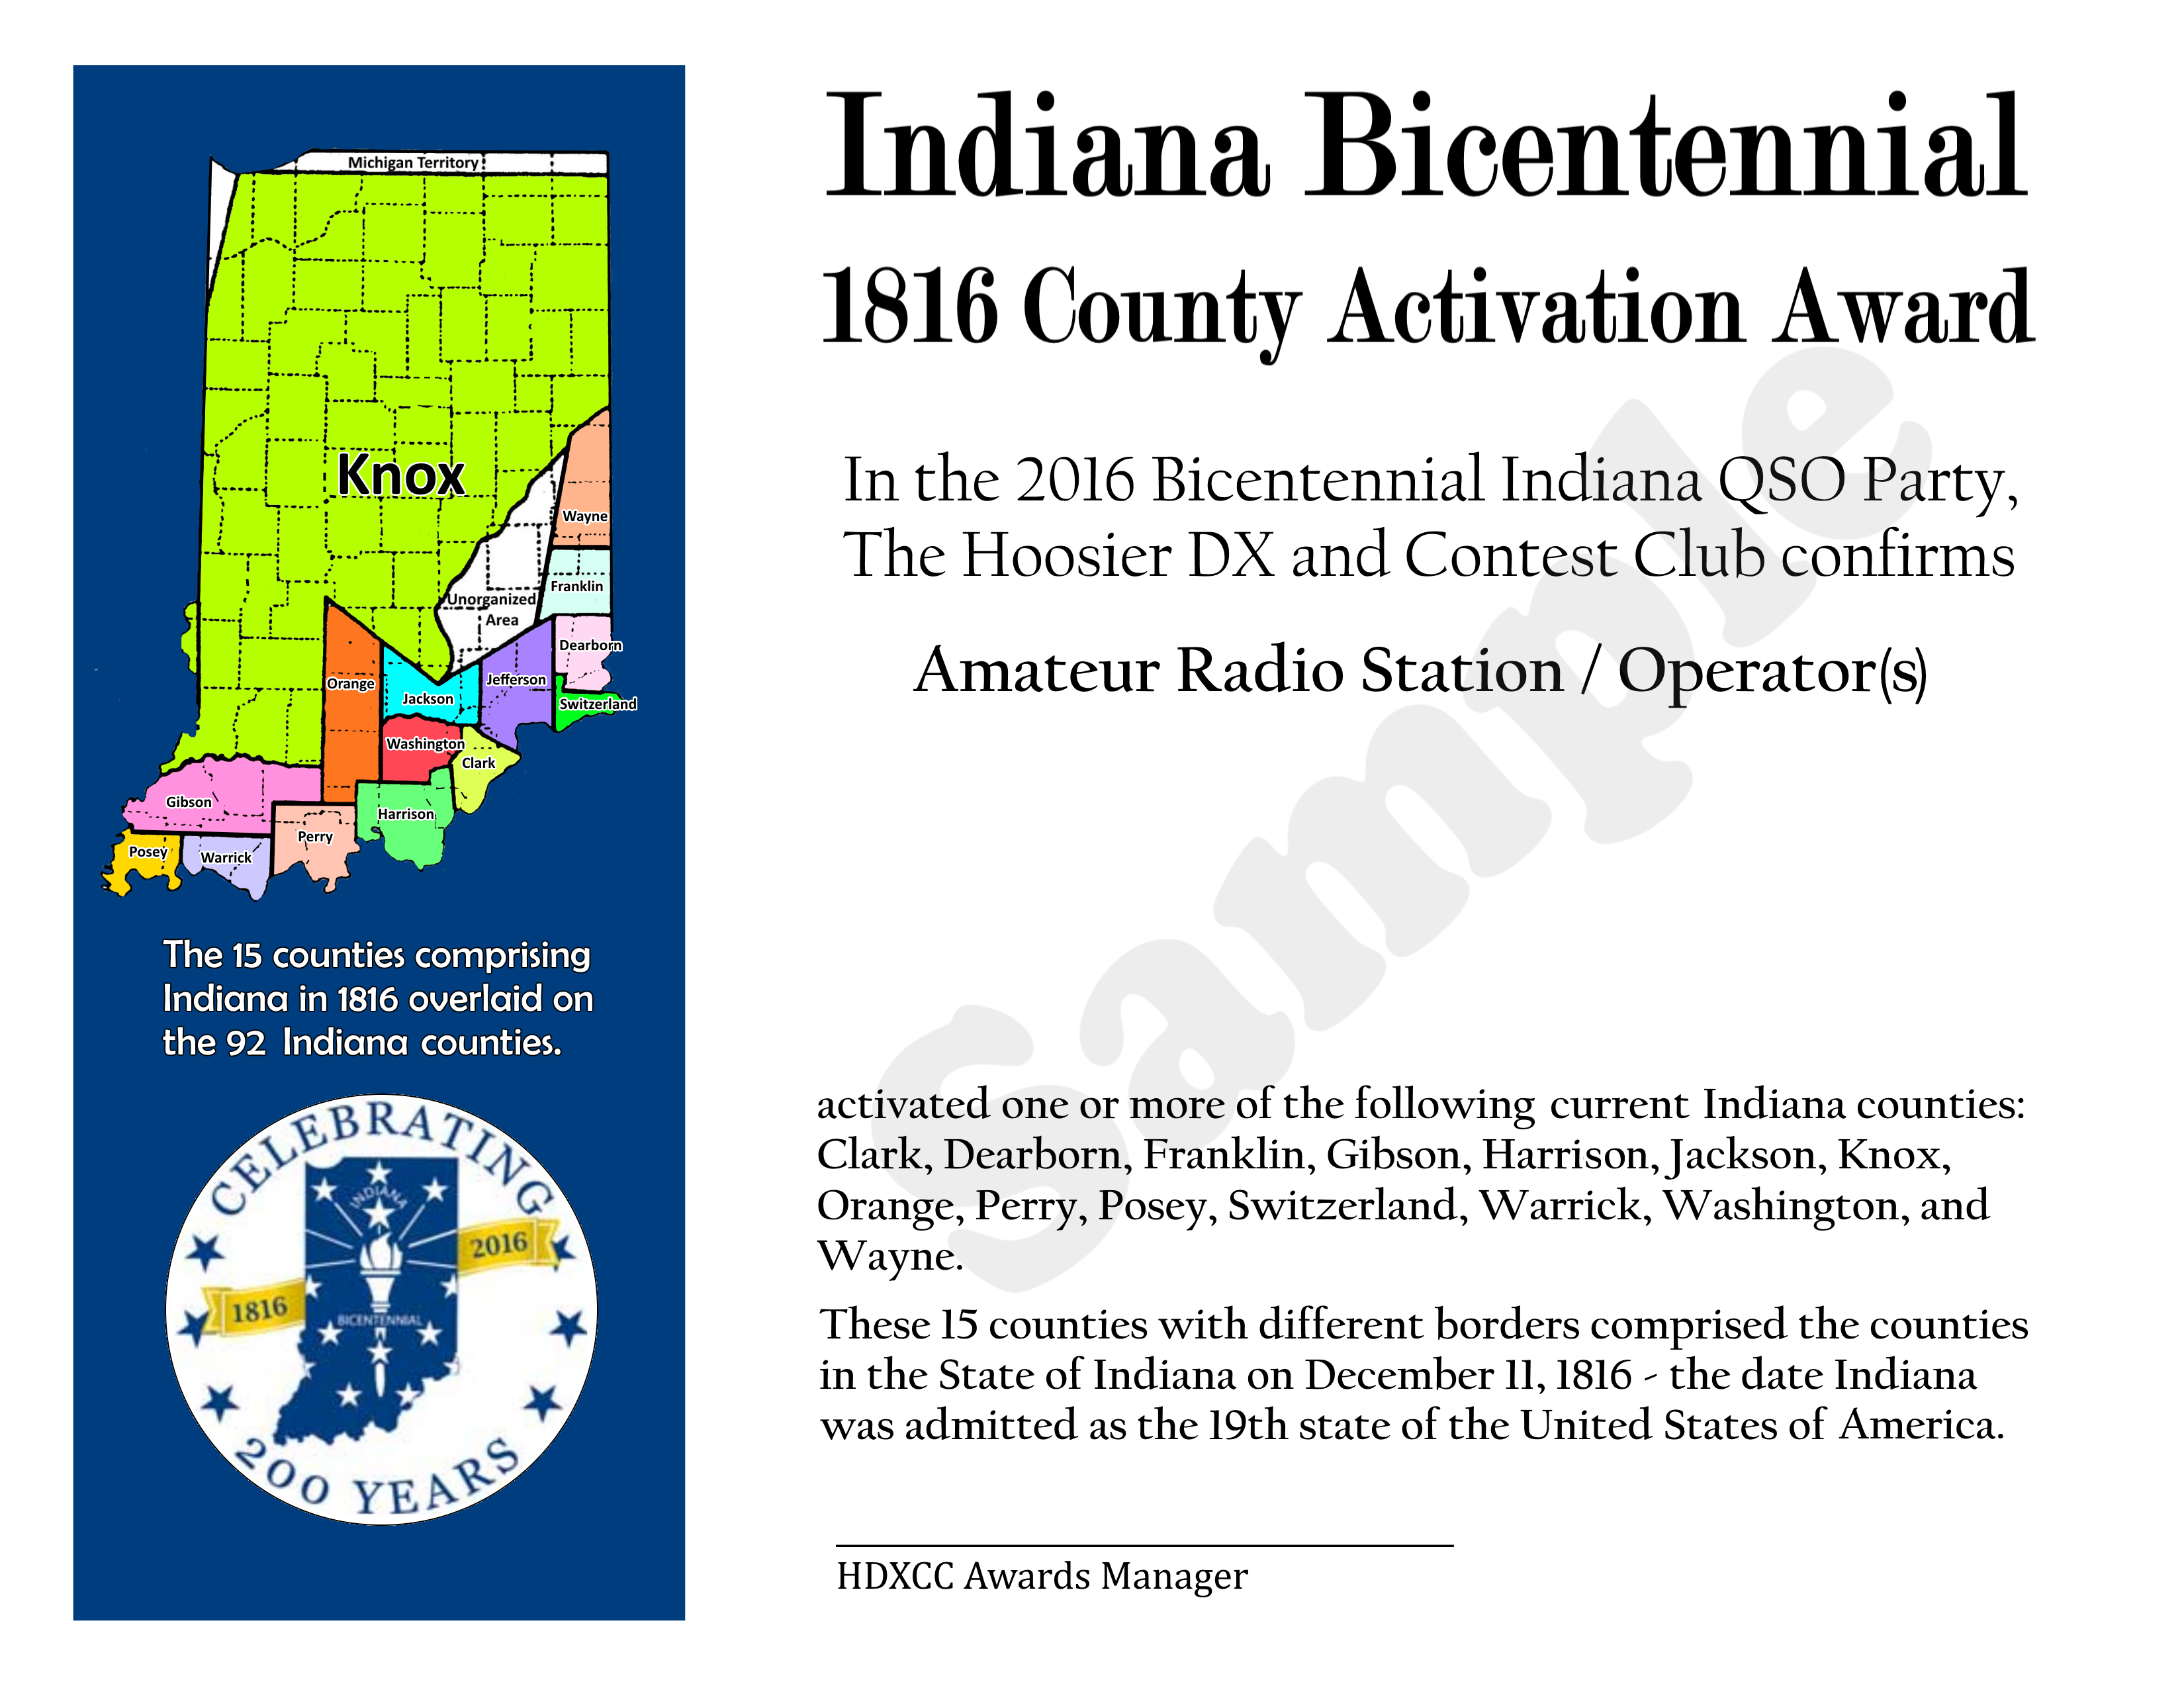 Indiana Bicentennial Activation Award